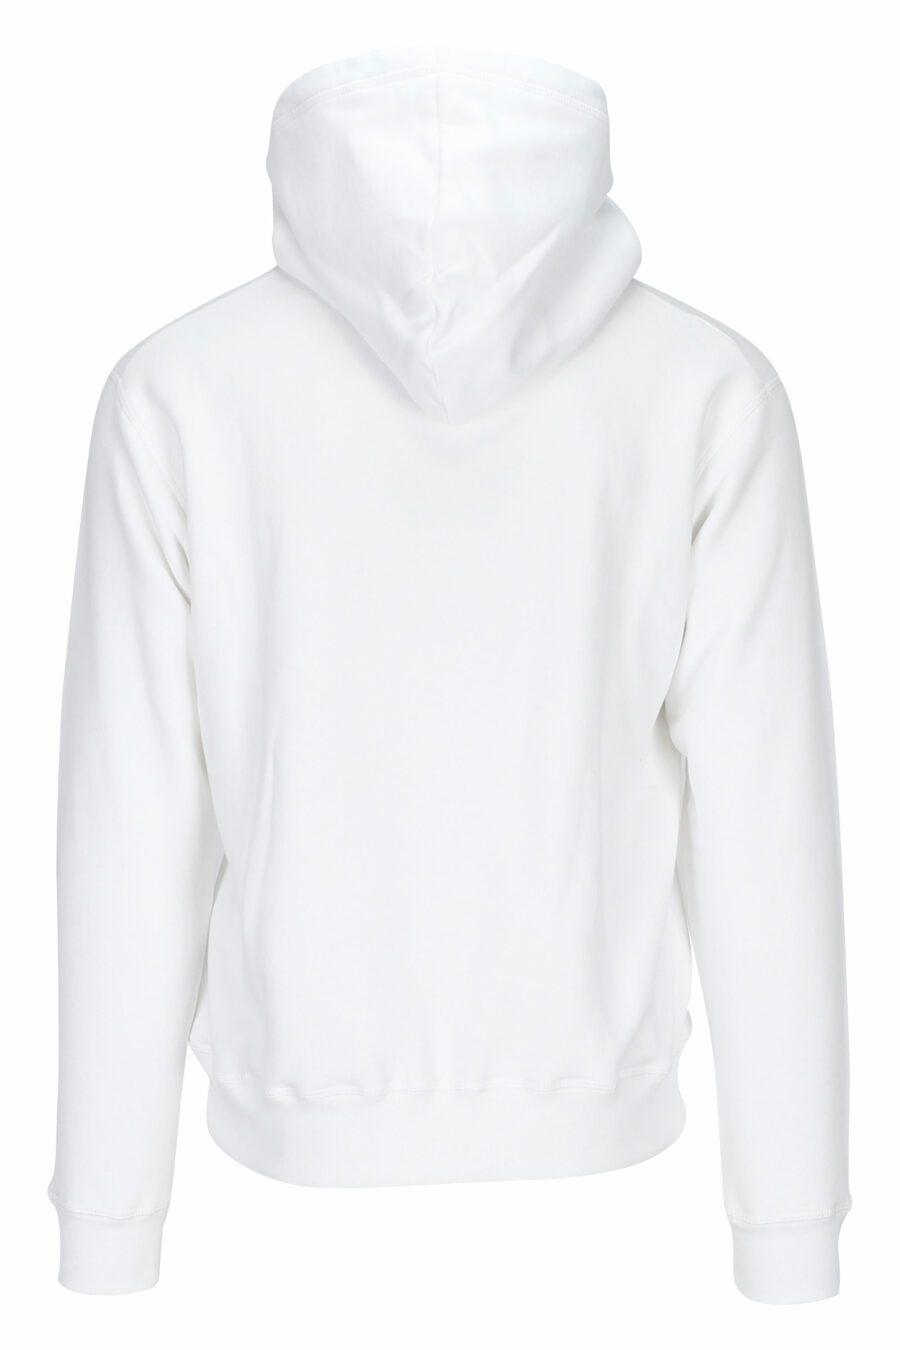 Weißes Kapuzensweatshirt mit quadratischem "Icon" Maxilogo - 8052134982570 1